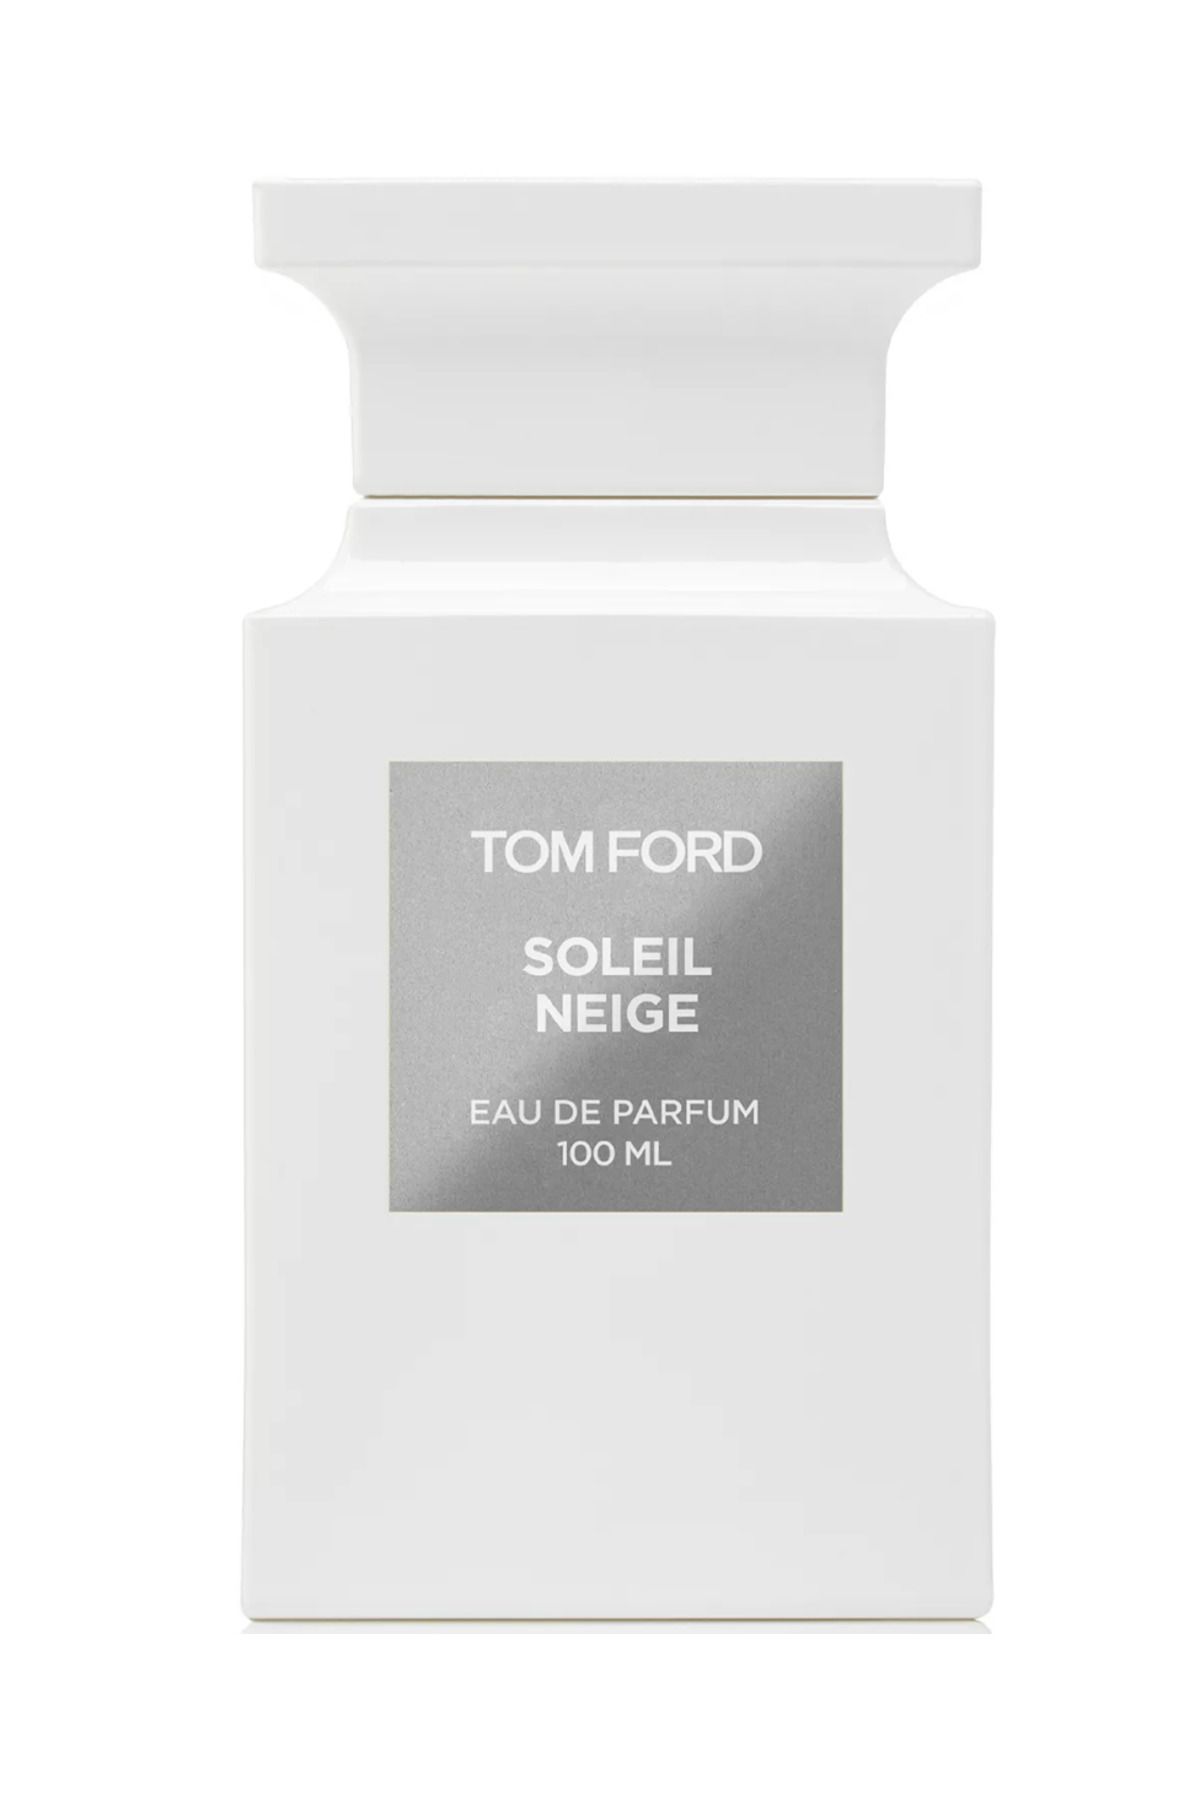 Tom Ford Soleil Neige Eau de Parfum 100 Ml